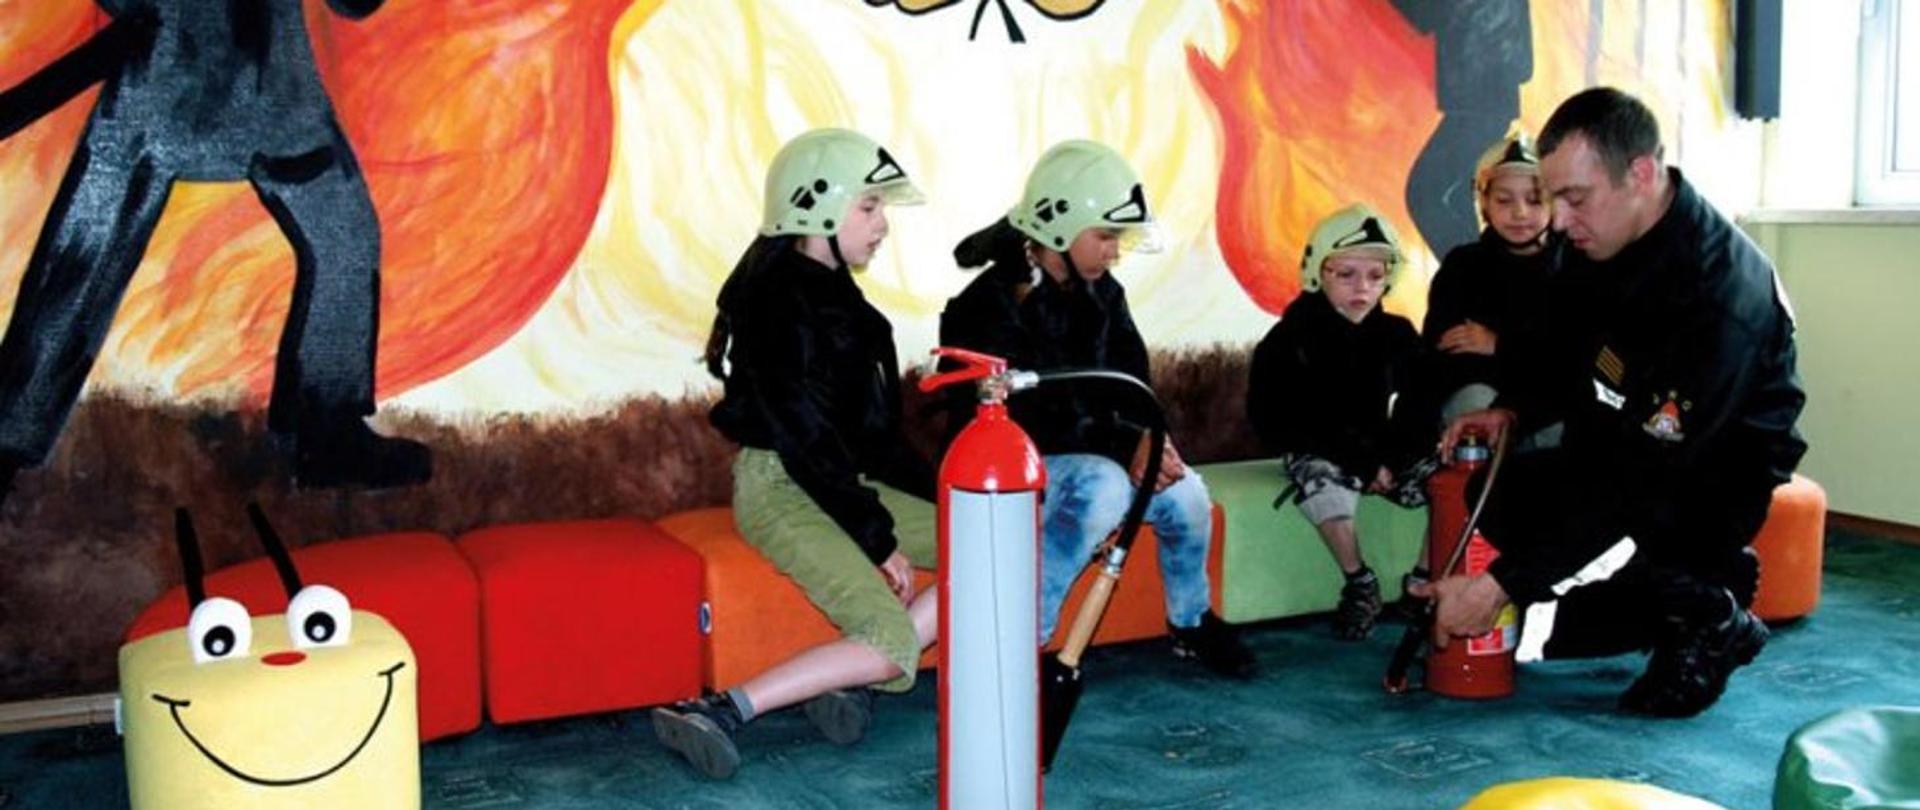 Zdjęcie przedstawia czwórkę dzieci w chełmach, którym strażak pokazuje gaśnicę. 